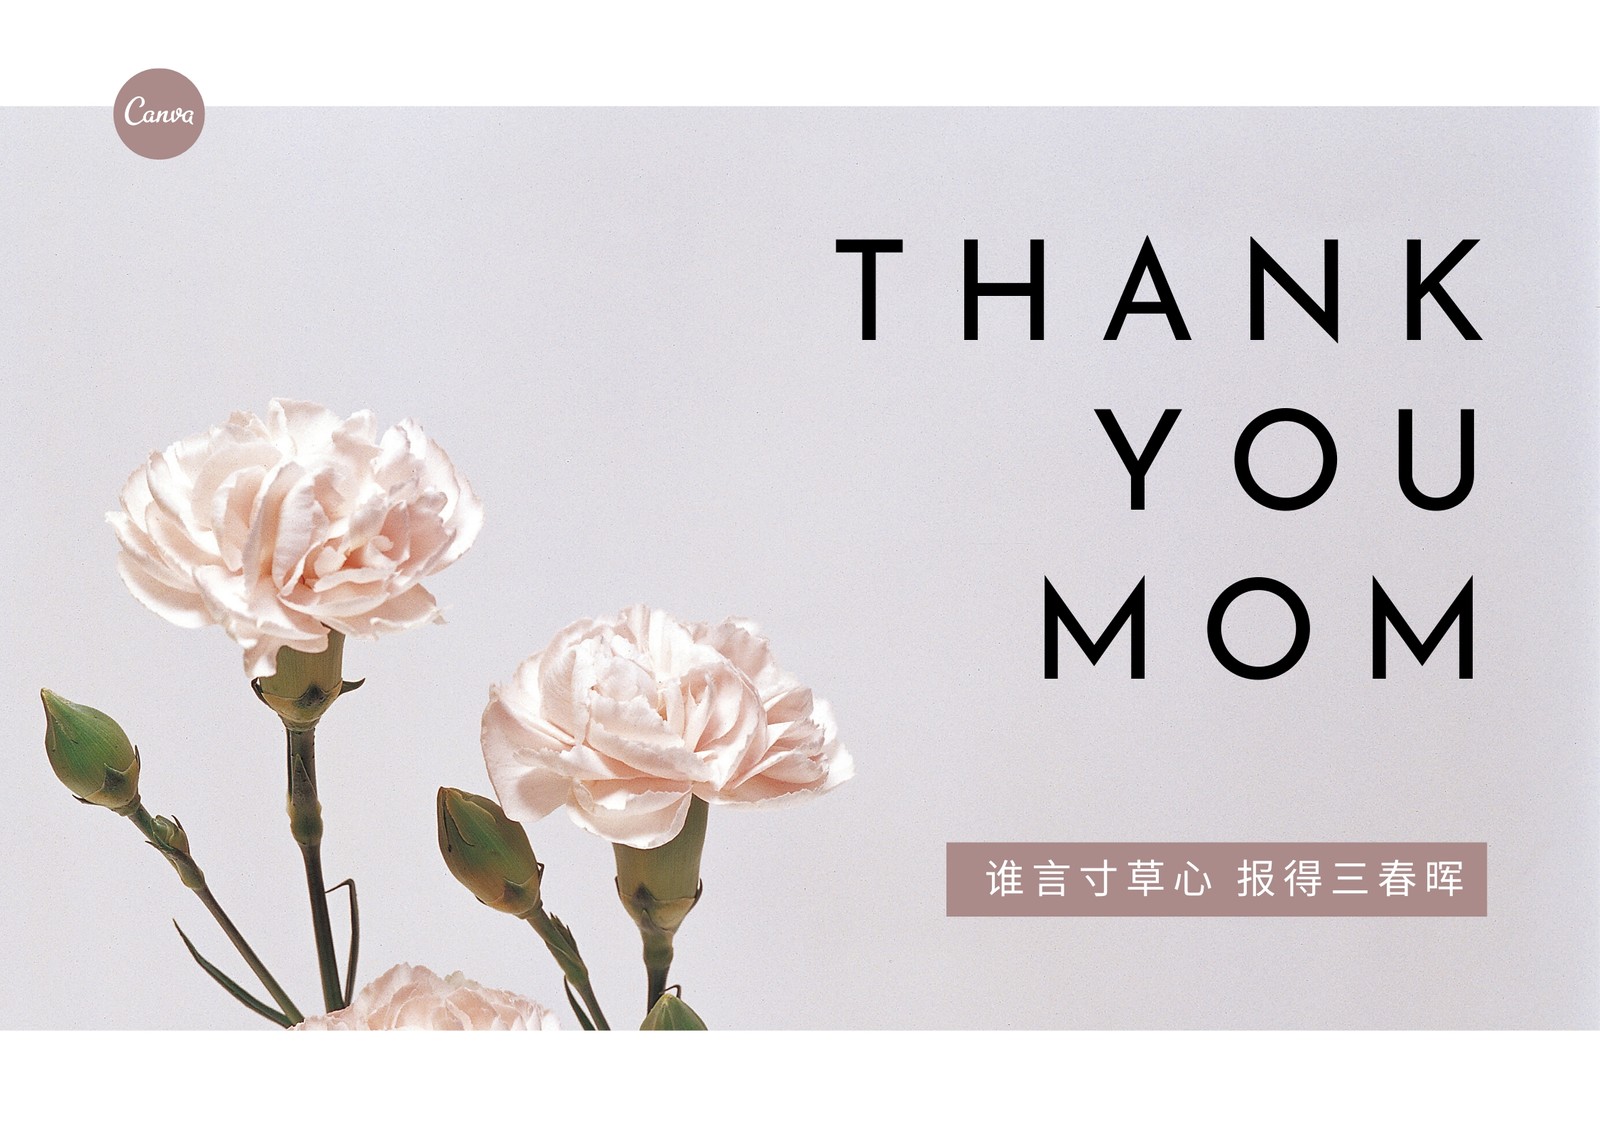 粉绿色水粉花卉手绘个人感谢中文贺卡 - 模板 - Canva可画